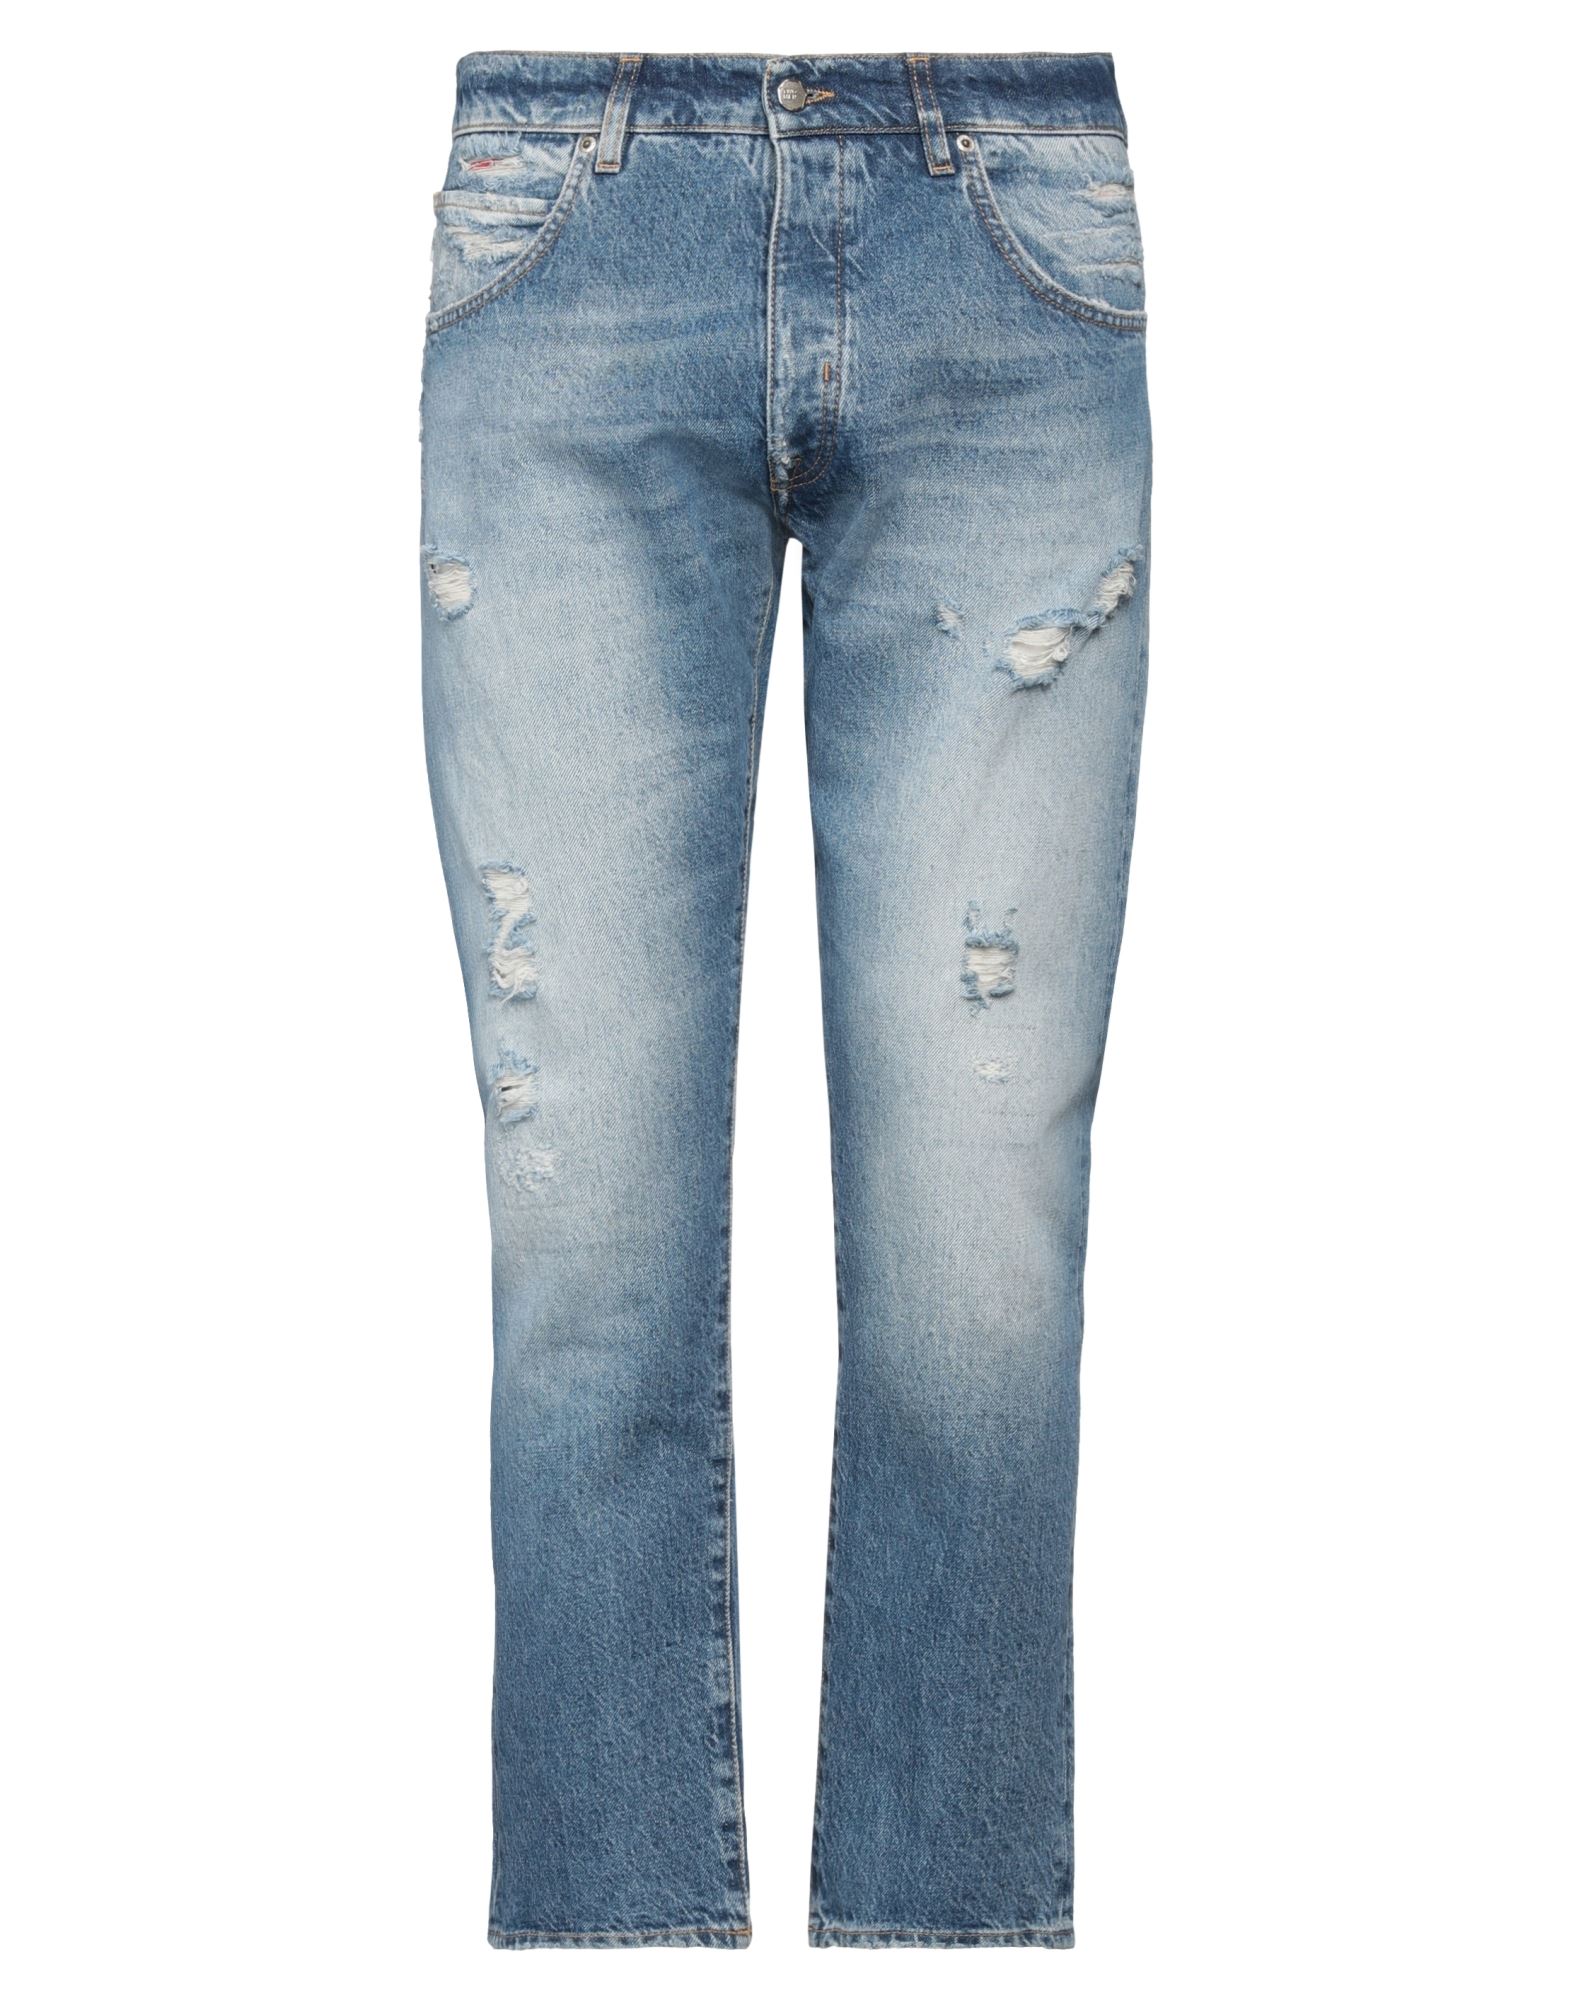 2w2m Man Jeans Blue Size 33 Cotton, Hemp, Polyester